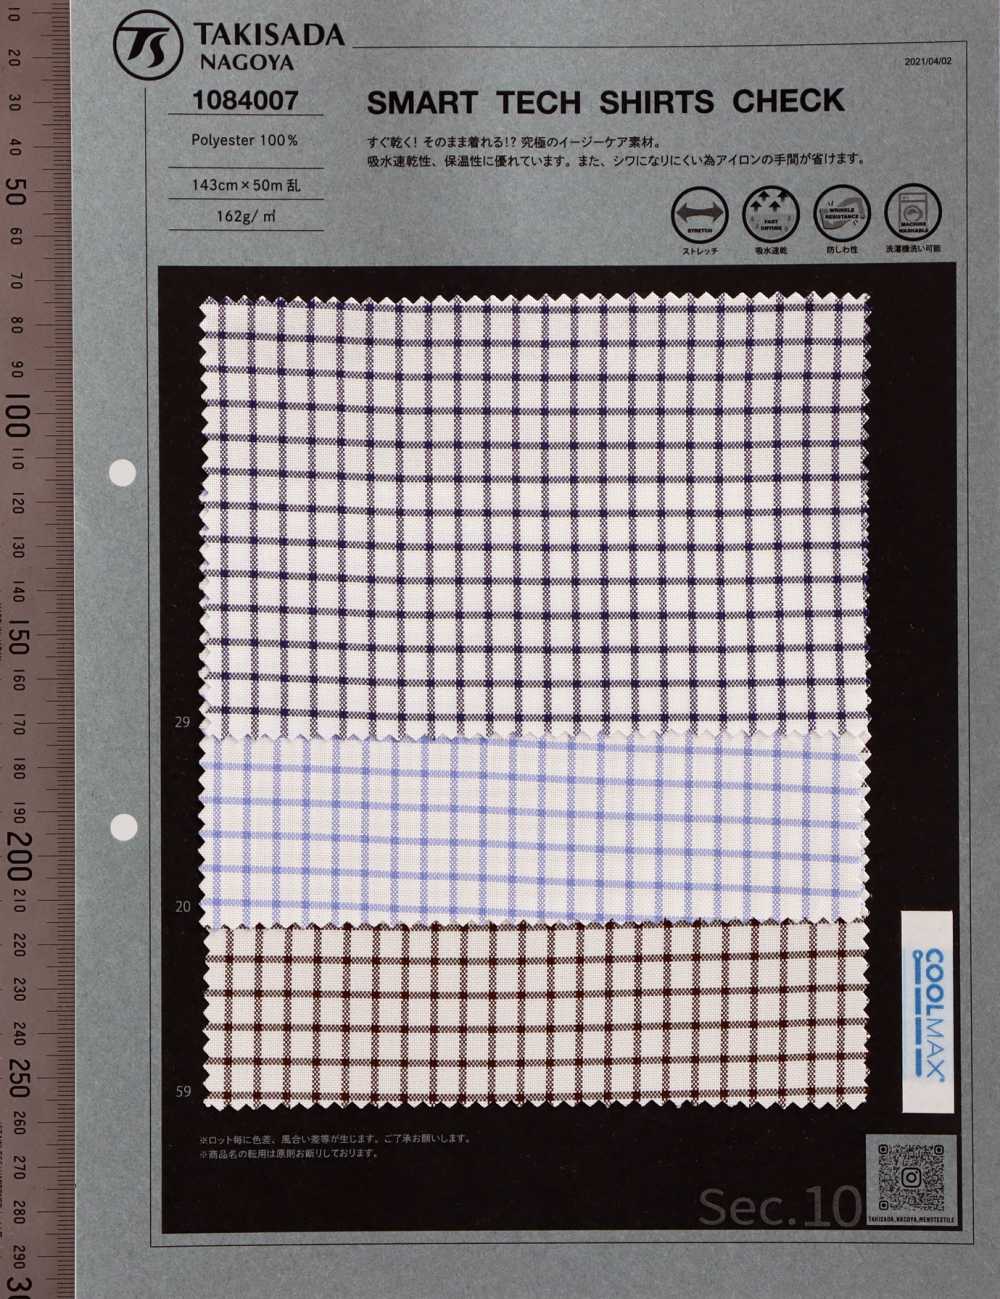 1084007 CHEMISE SMART TECH Carreaux Graphiques[Fabrication De Textile] Takisada Nagoya